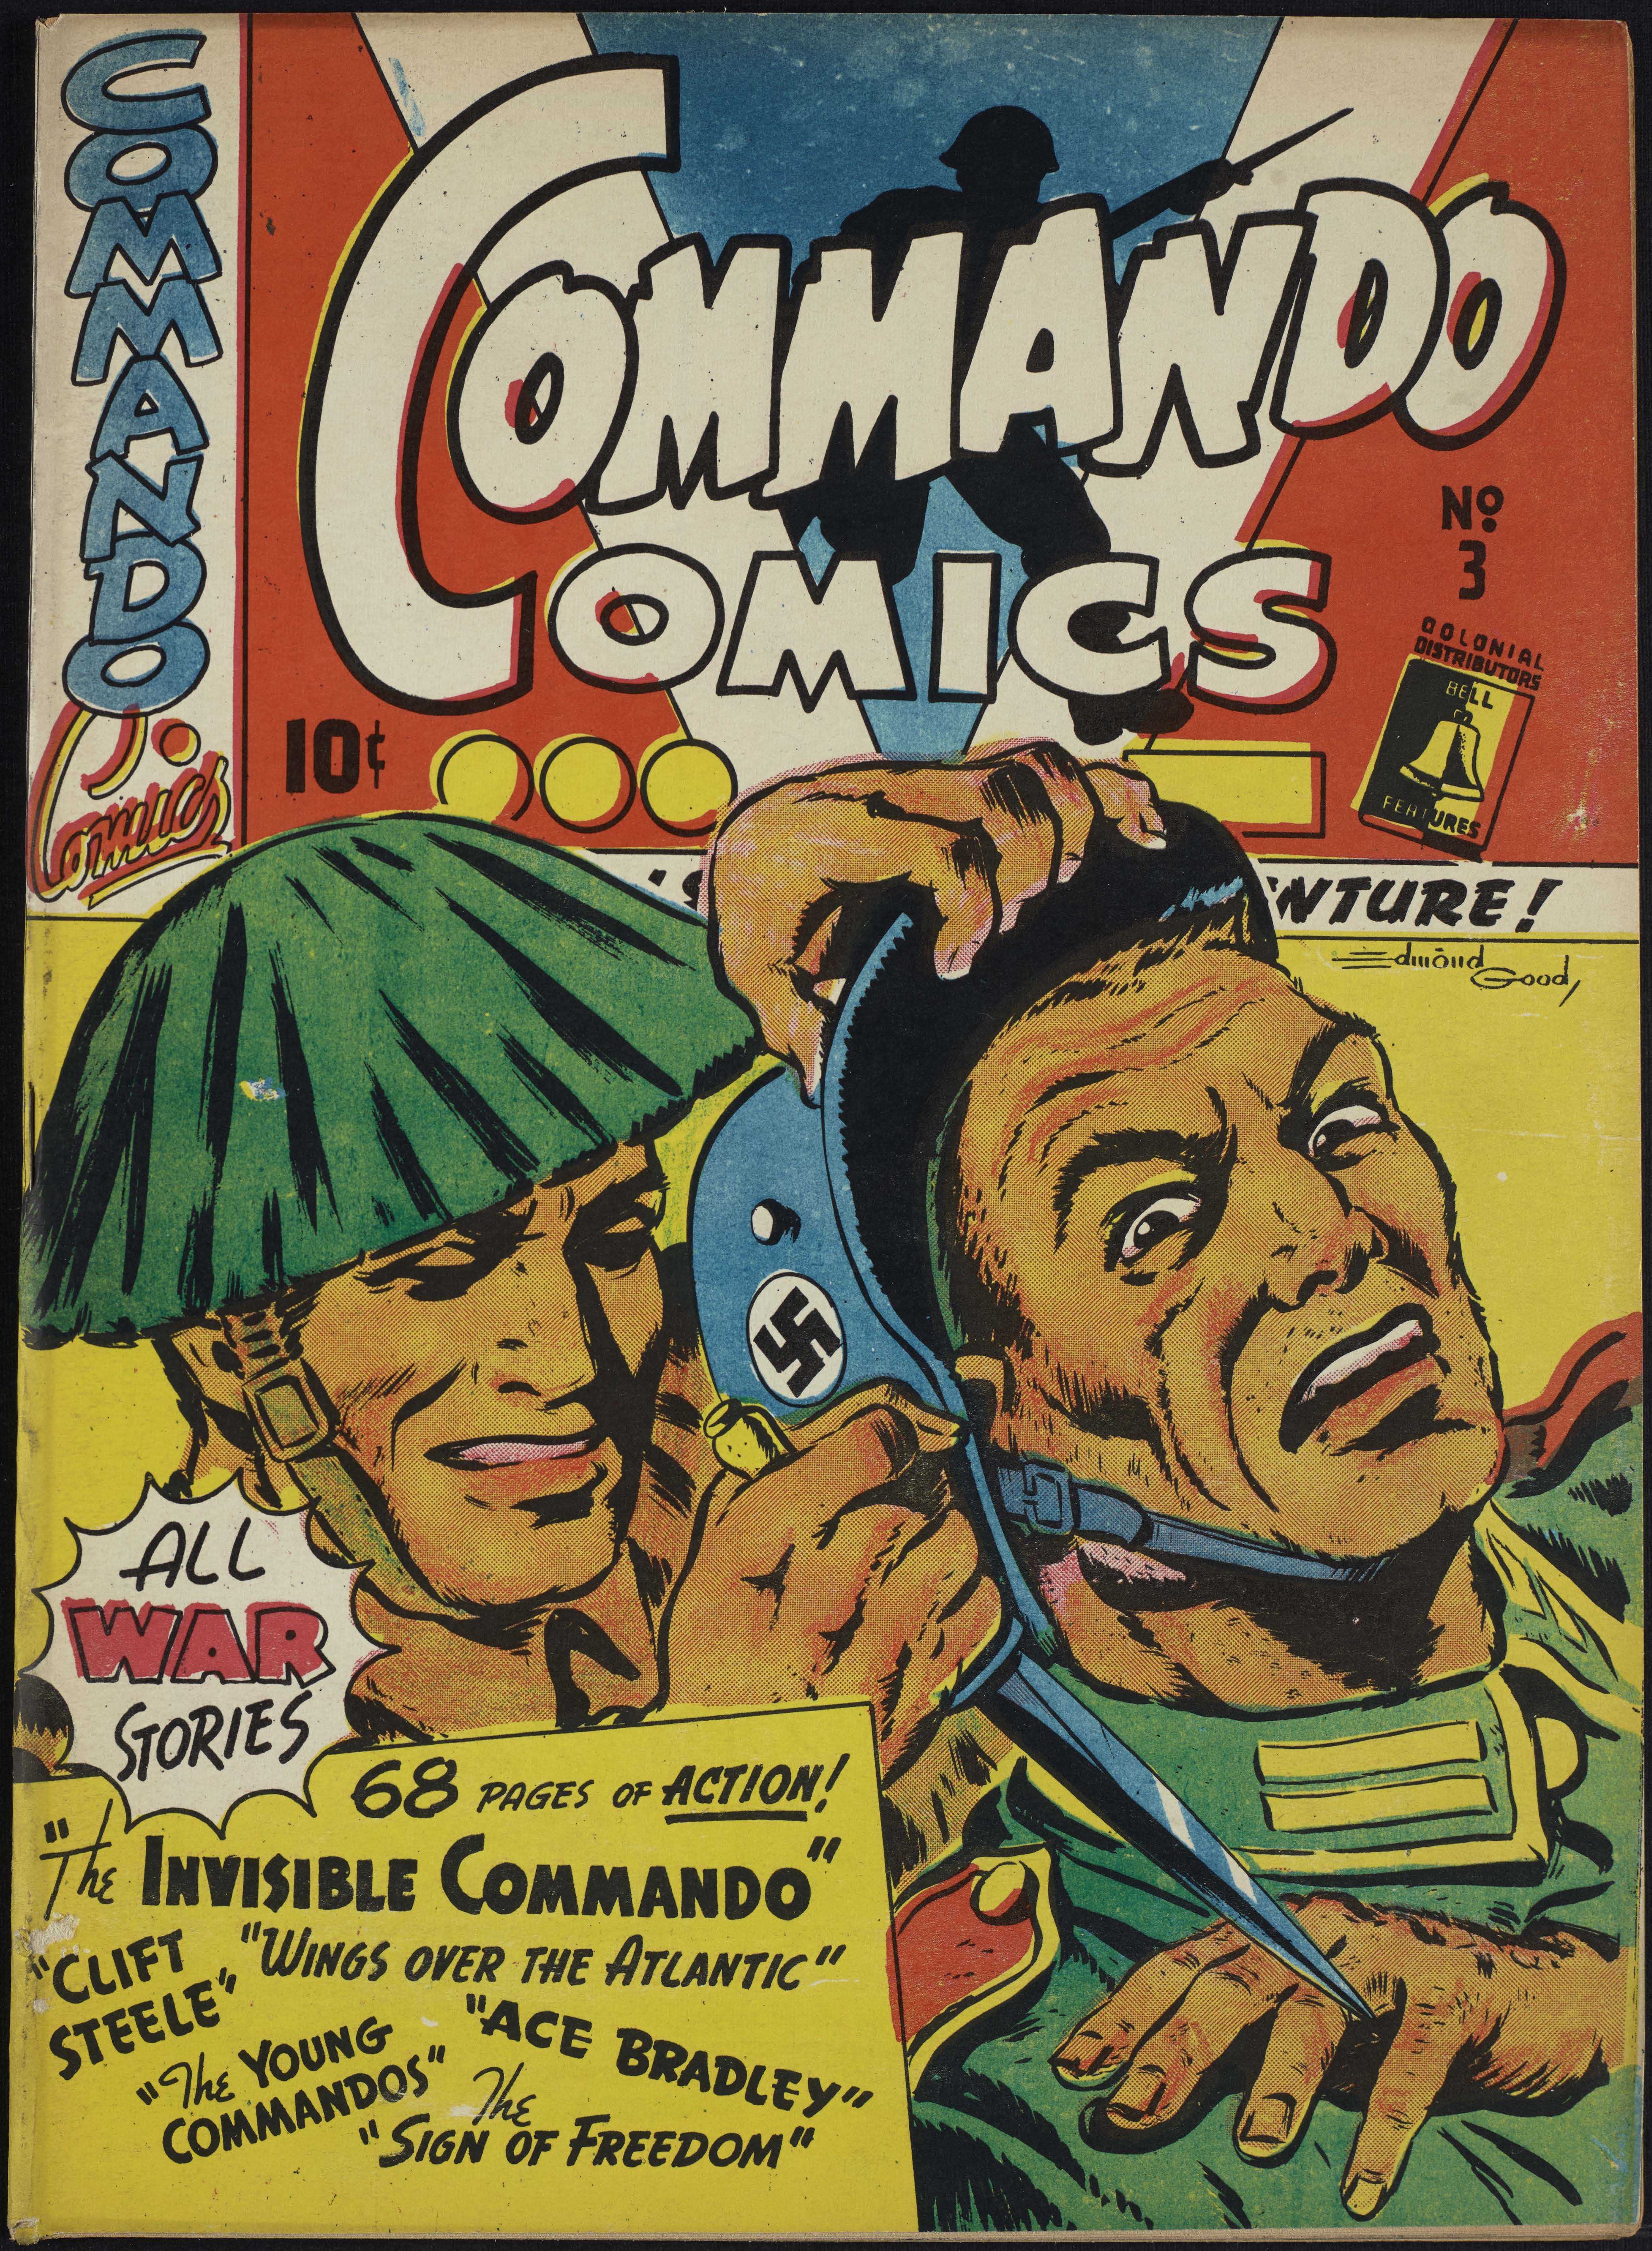 Commando Comics No. 3